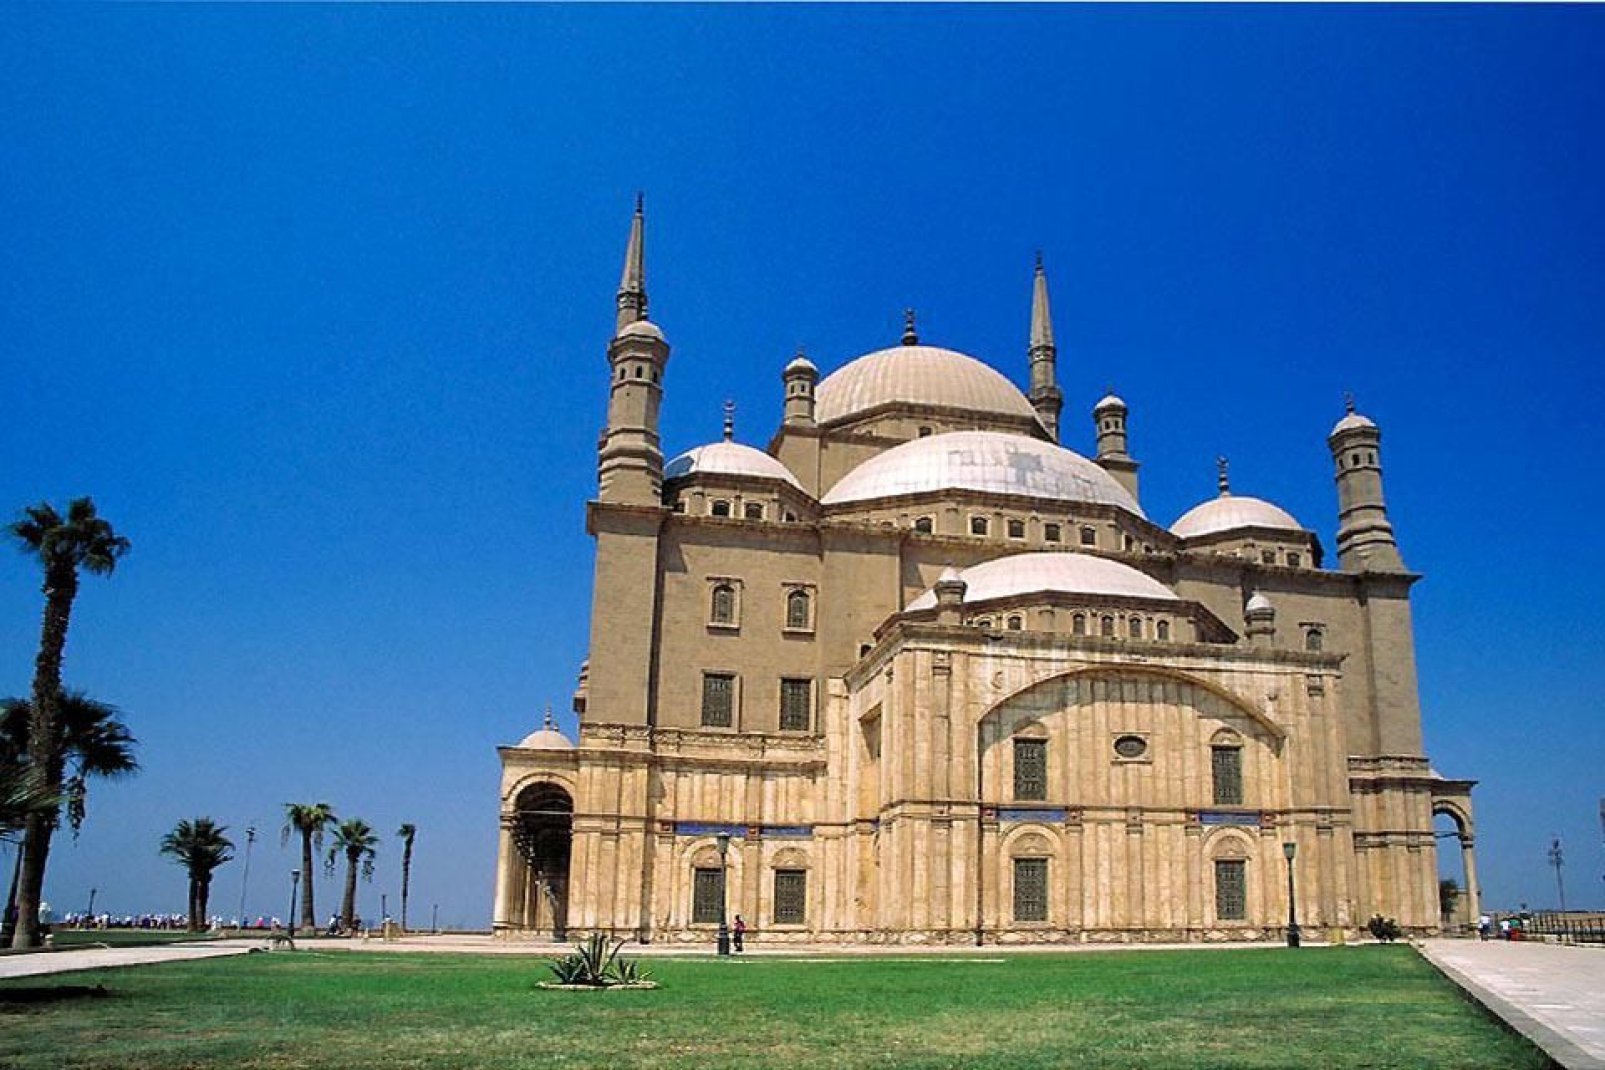 La grand mosquée du Caire a été érigée au 19e siècle sous le règne de Mohammed Ali, fondateur de l'Egypte moderne.